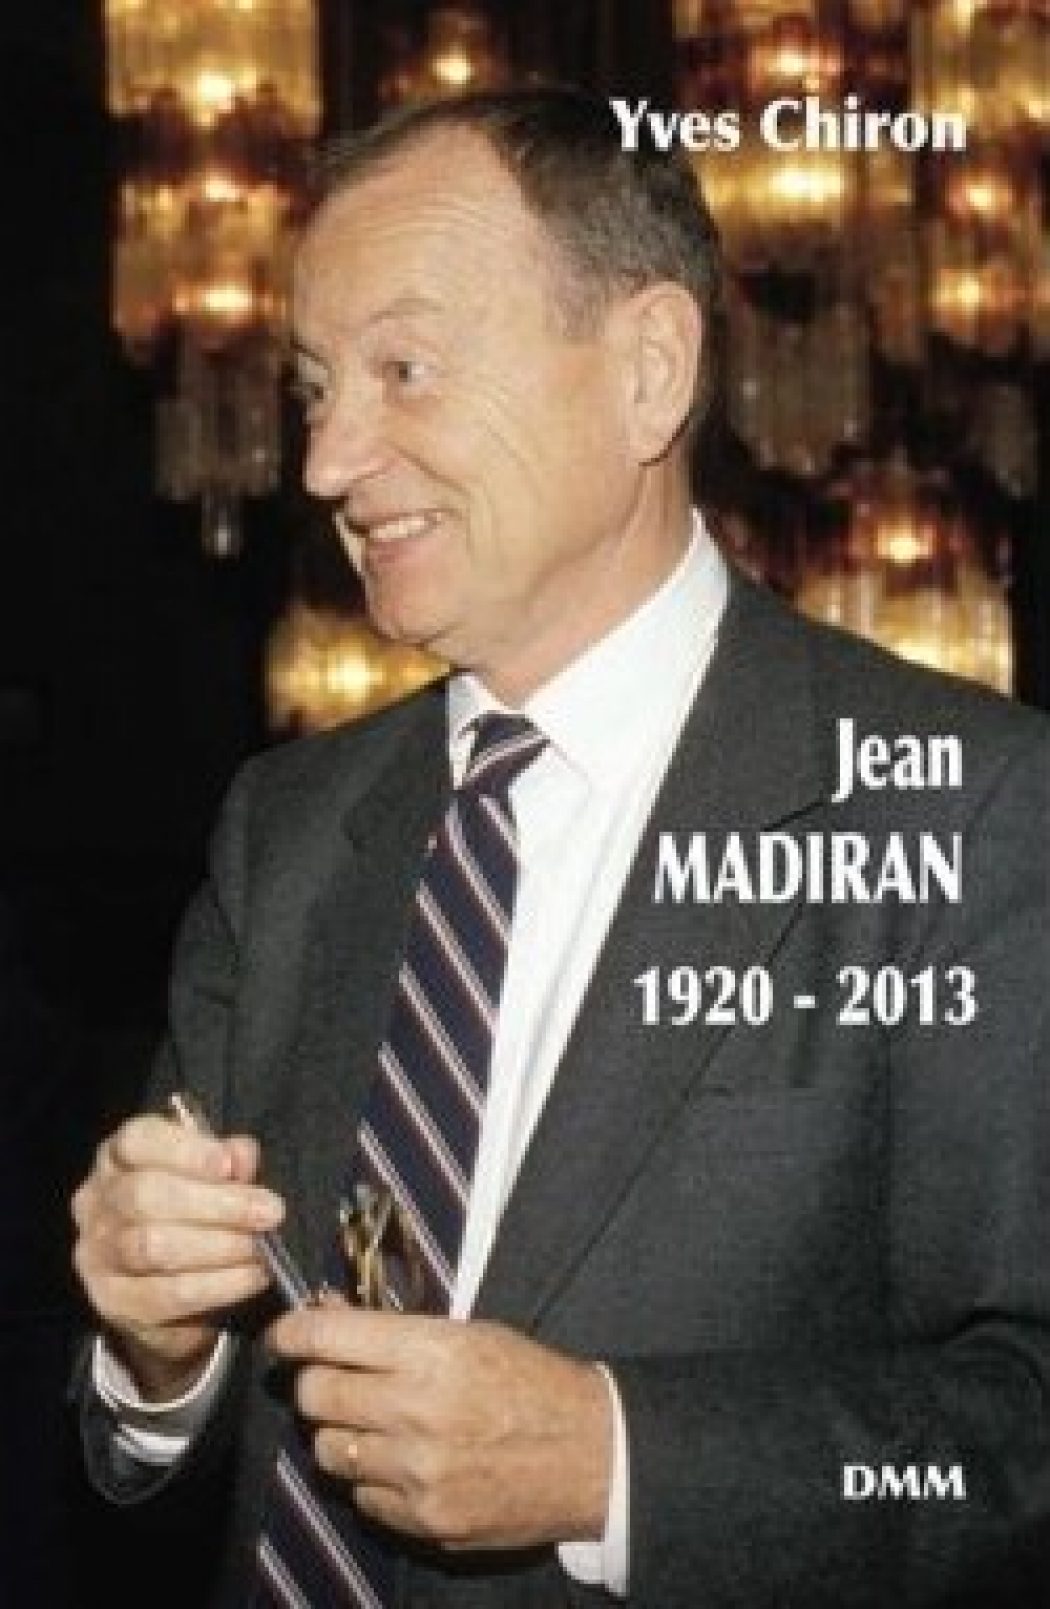 Jean Madiran- 1920-2013, “Une plongée dans l’histoire du traditionalisme et un bel hommage à un défenseur de la foi.”